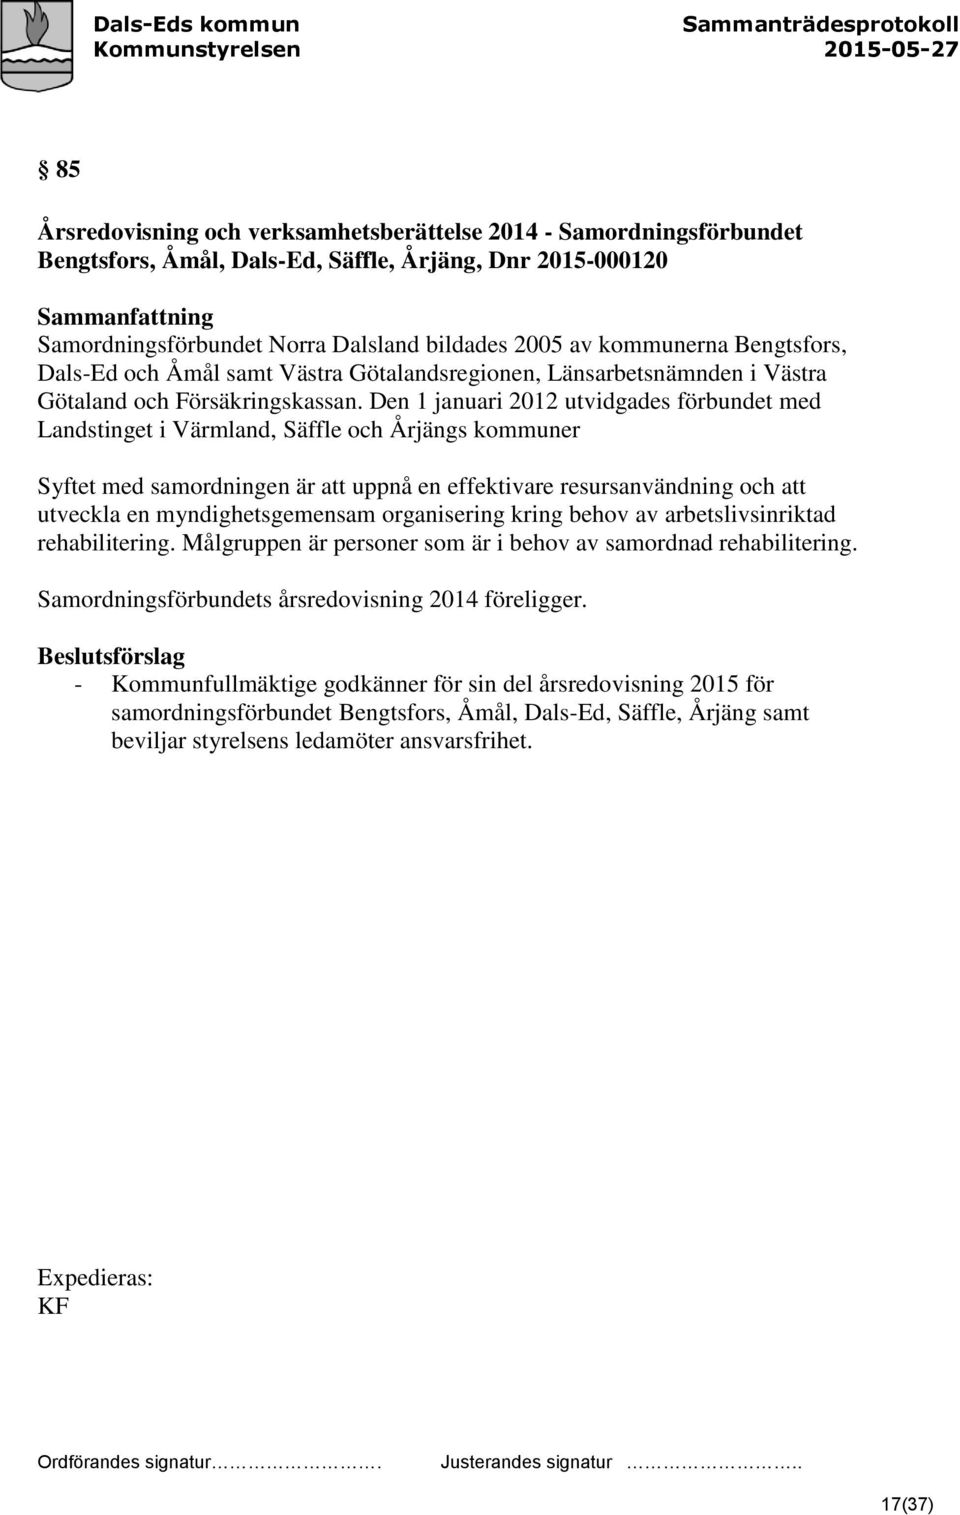 Den 1 januari 2012 utvidgades förbundet med Landstinget i Värmland, Säffle och Årjängs kommuner Syftet med samordningen är att uppnå en effektivare resursanvändning och att utveckla en